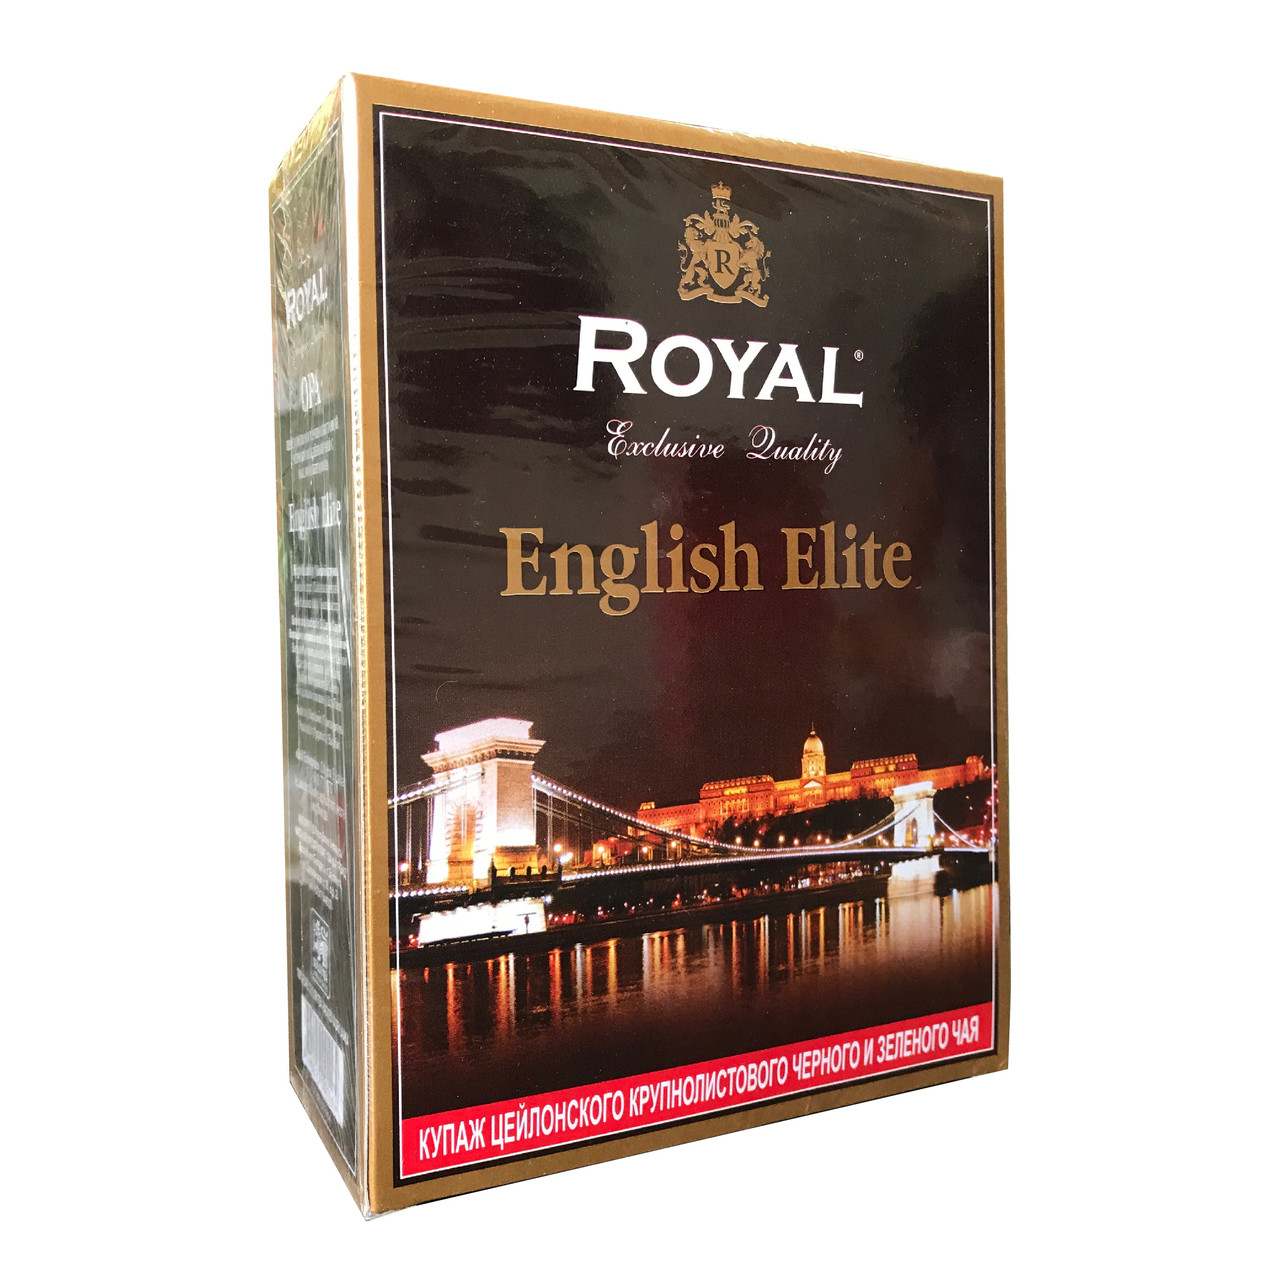 Чай Royal "English Elite" черный и зелёный чай с маслом бергамота, 200 г